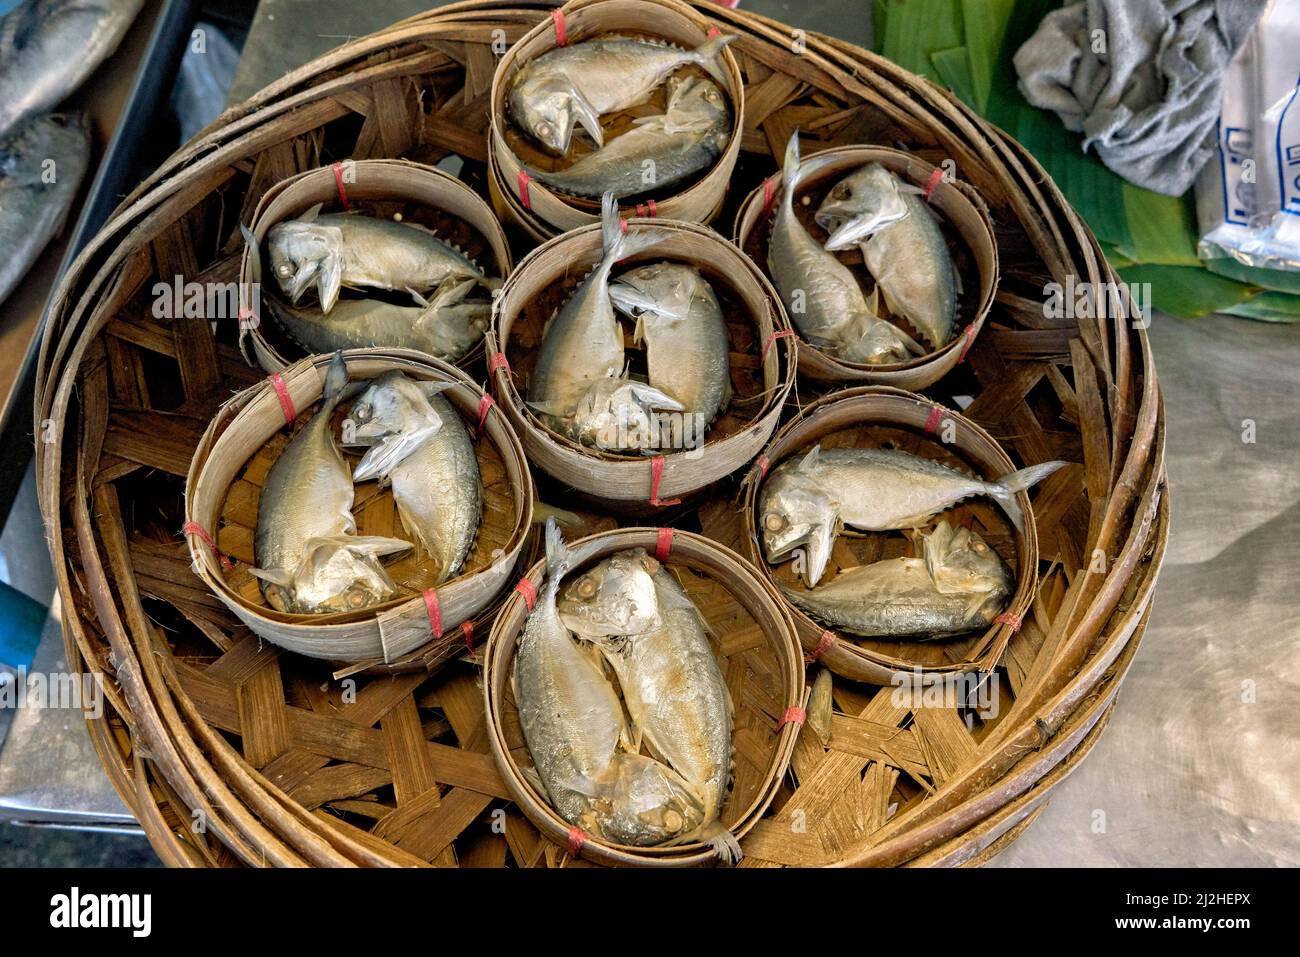 Thailandia sgombro piccolo pesce unico per il Golfo della Thailandia con le sue dimensioni piccole e forma rotonda e corta Foto Stock